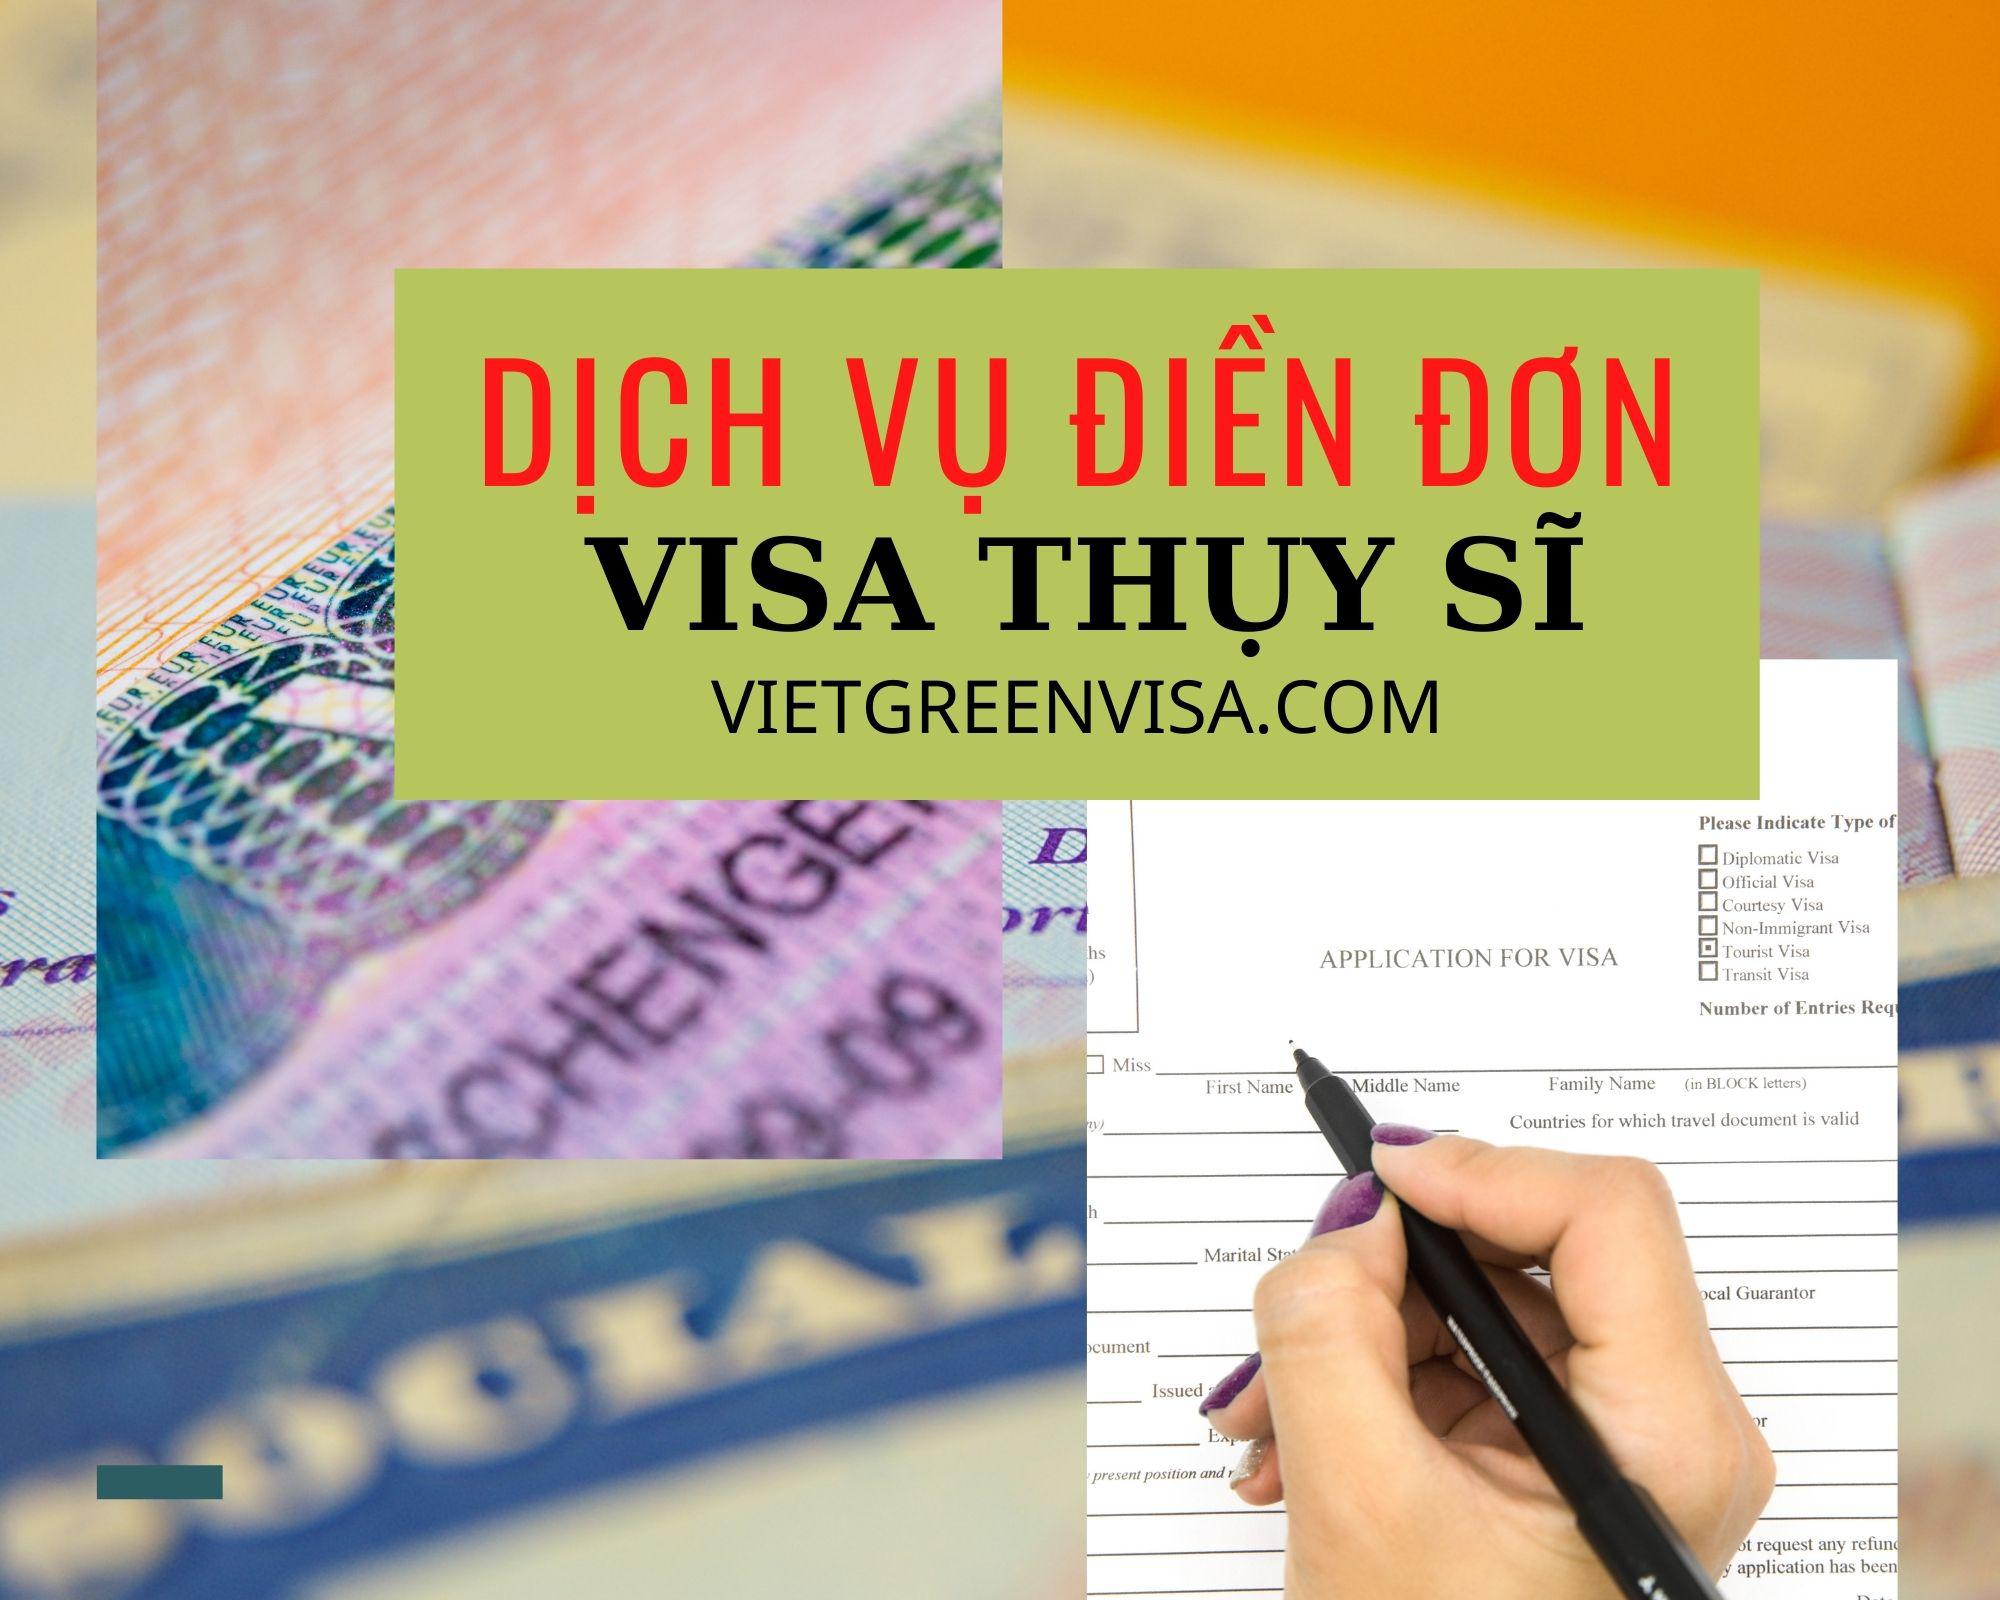 Dịch vụ khai form điền đơn visa Thụy Sĩ online nhanh